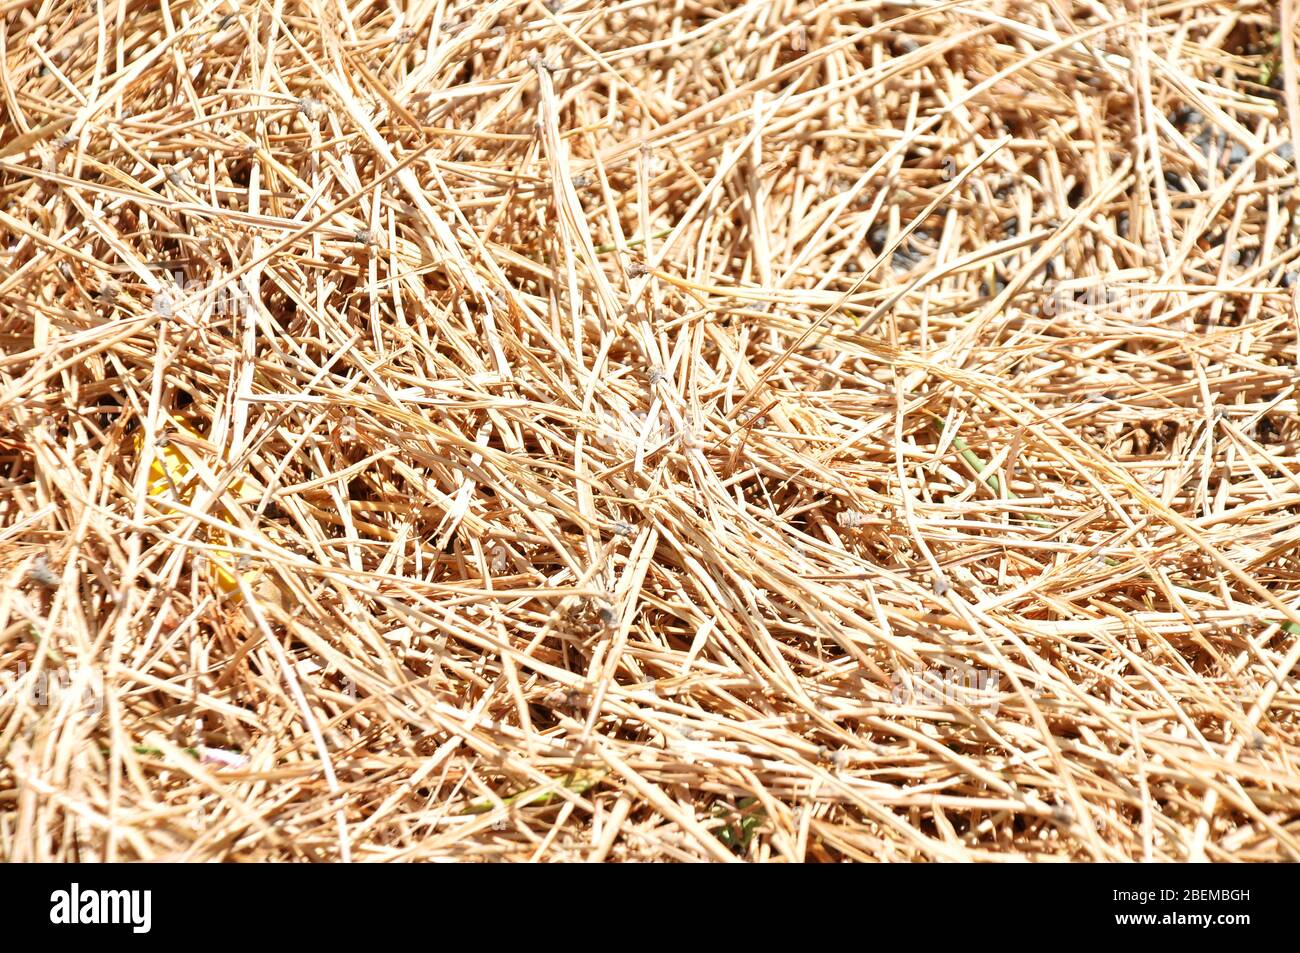 tallos y trozos de hierba o paja silvestre seca Foto de stock